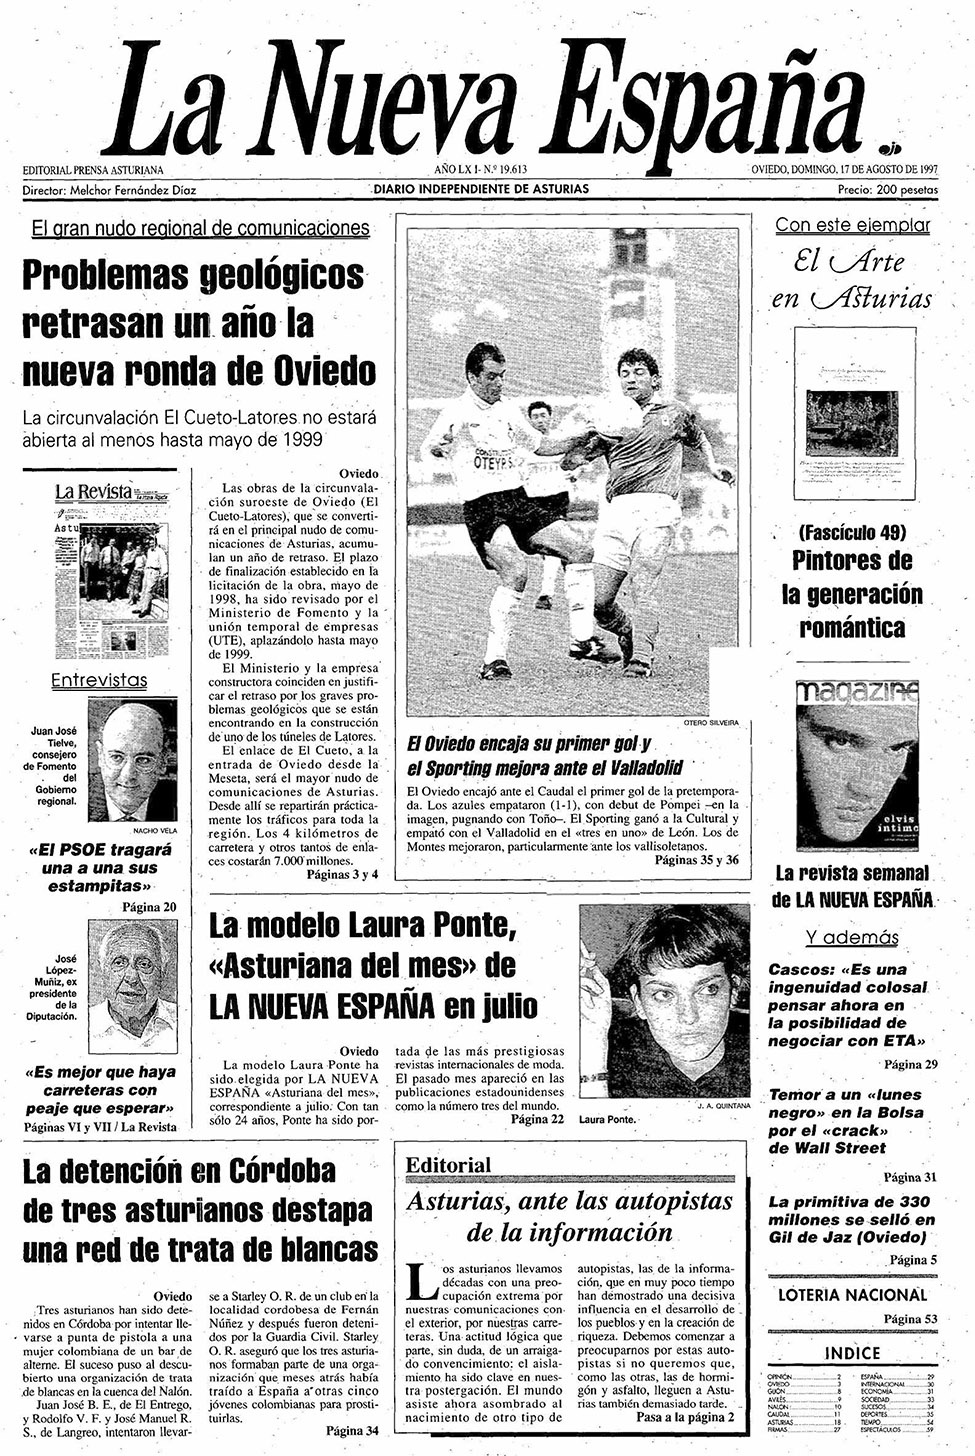 Portada del Domingo, 17 de Agosto de 1997